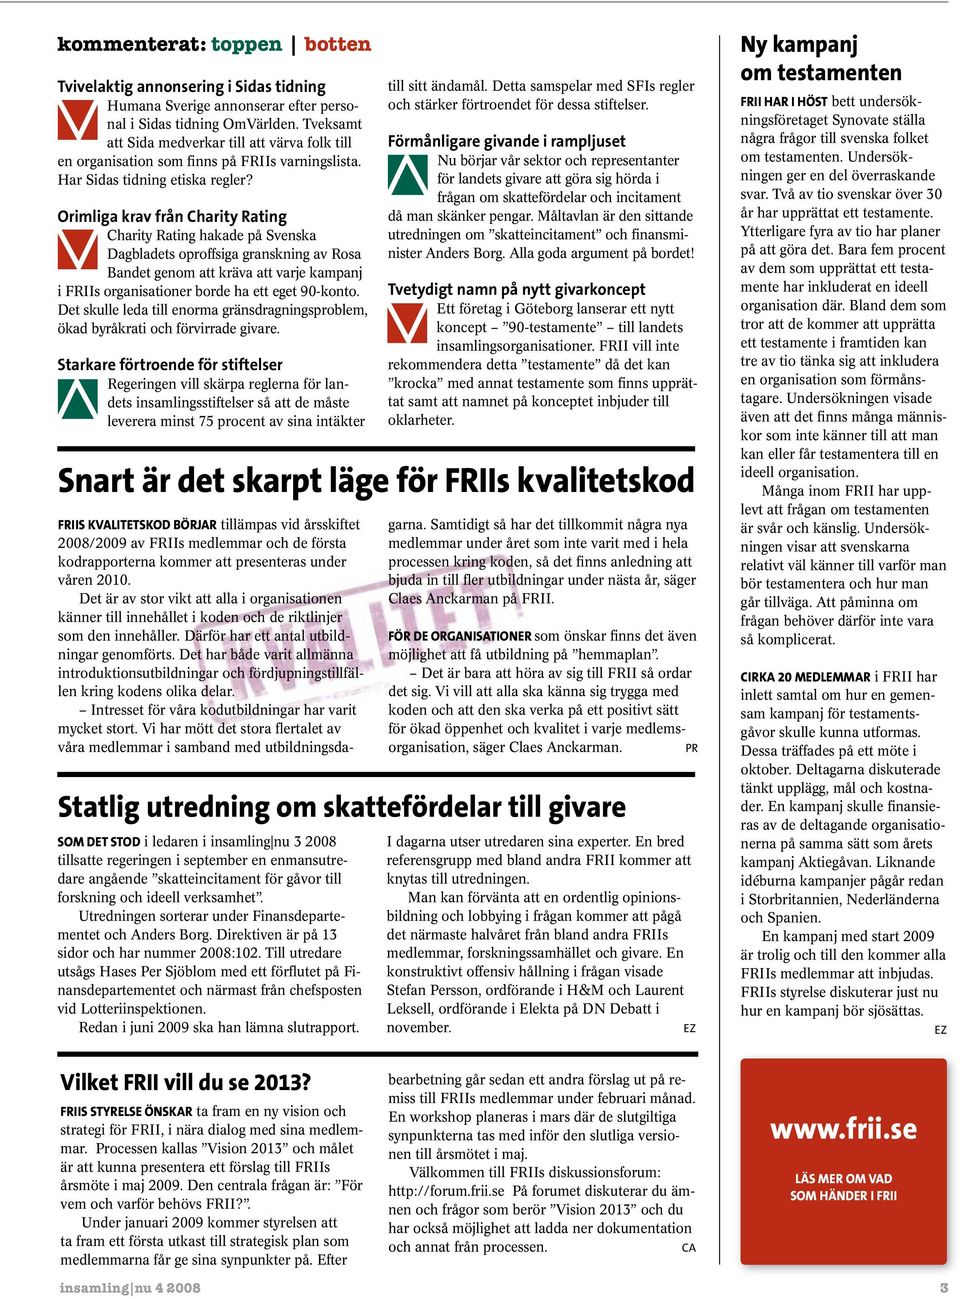 Orimliga krav från Charity Rating Charity Rating hakade på Svenska Dagbladets oproffsiga granskning av Rosa Bandet genom att kräva att varje kampanj i FRIIs organisationer borde ha ett eget 90-konto.